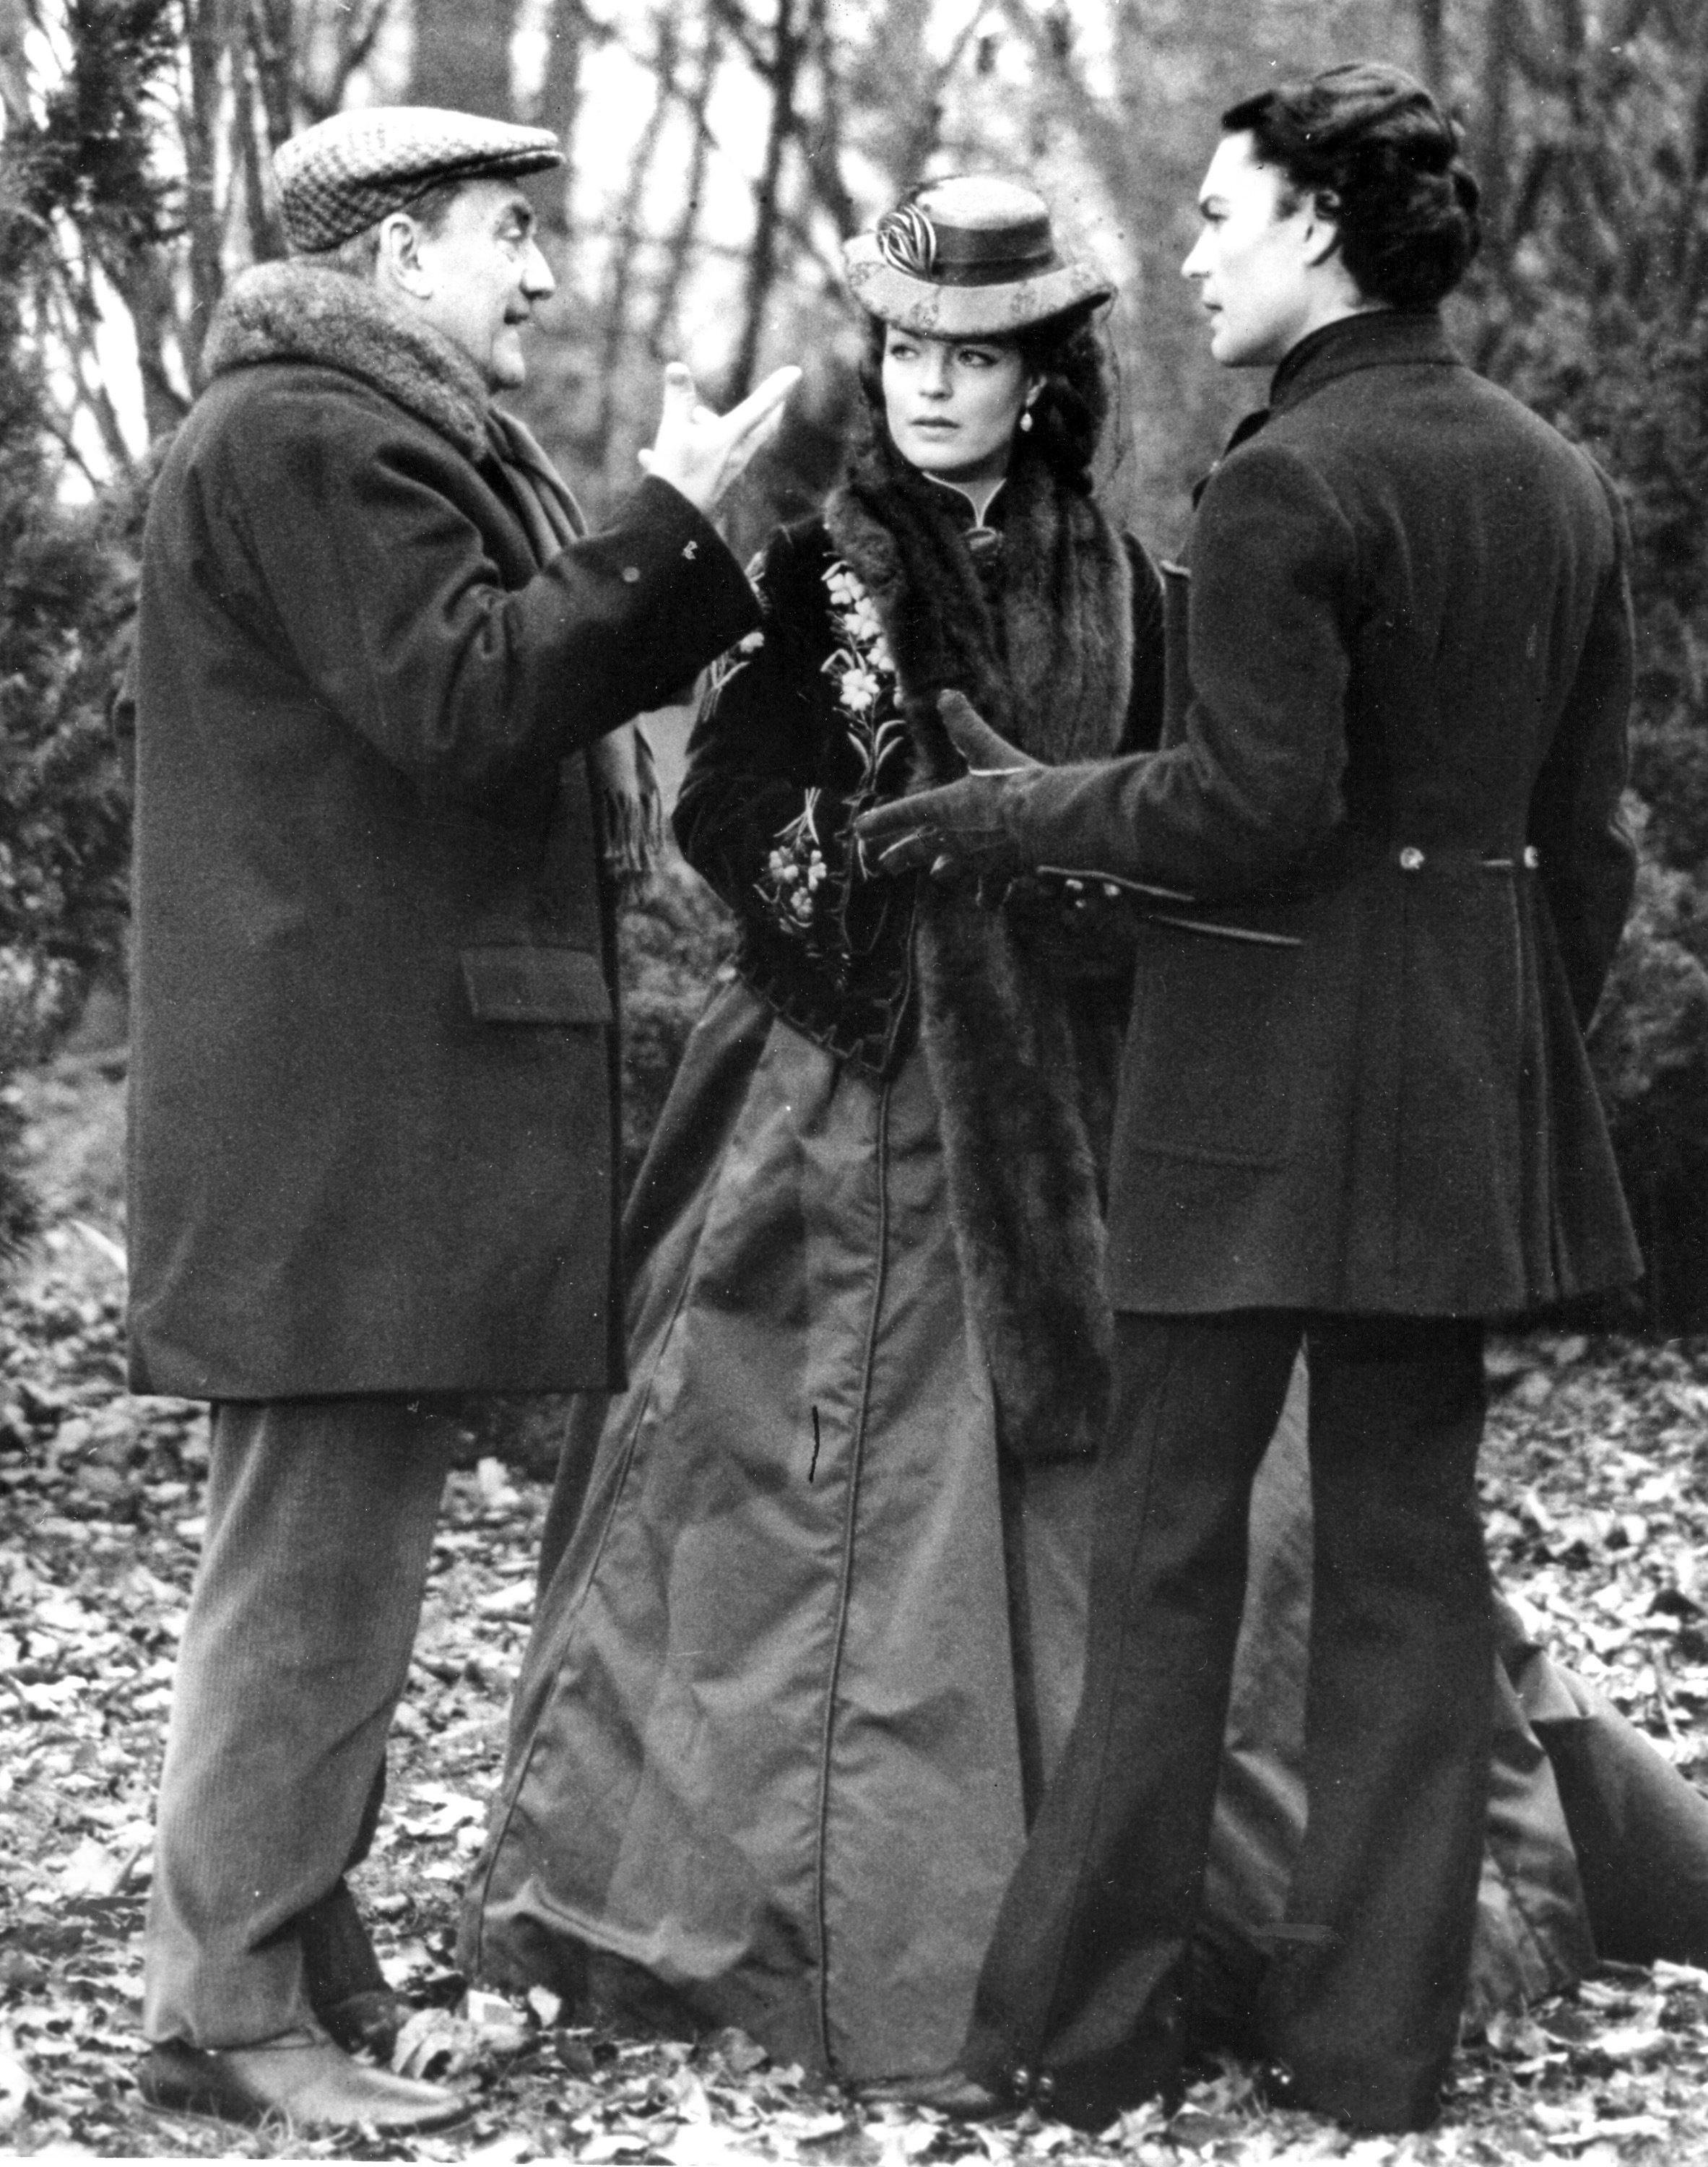 El director de cine italiano Luchino Visconti, a la izquierda, da las últimas instrucciones al actor Helmut Berger y a la actriz Romy Schneider antes de filmar una escena de 'Ludwig' cerca de Munich, en Alemania, el 15 de abril de 1972 (Foto AP/Str, archivo)